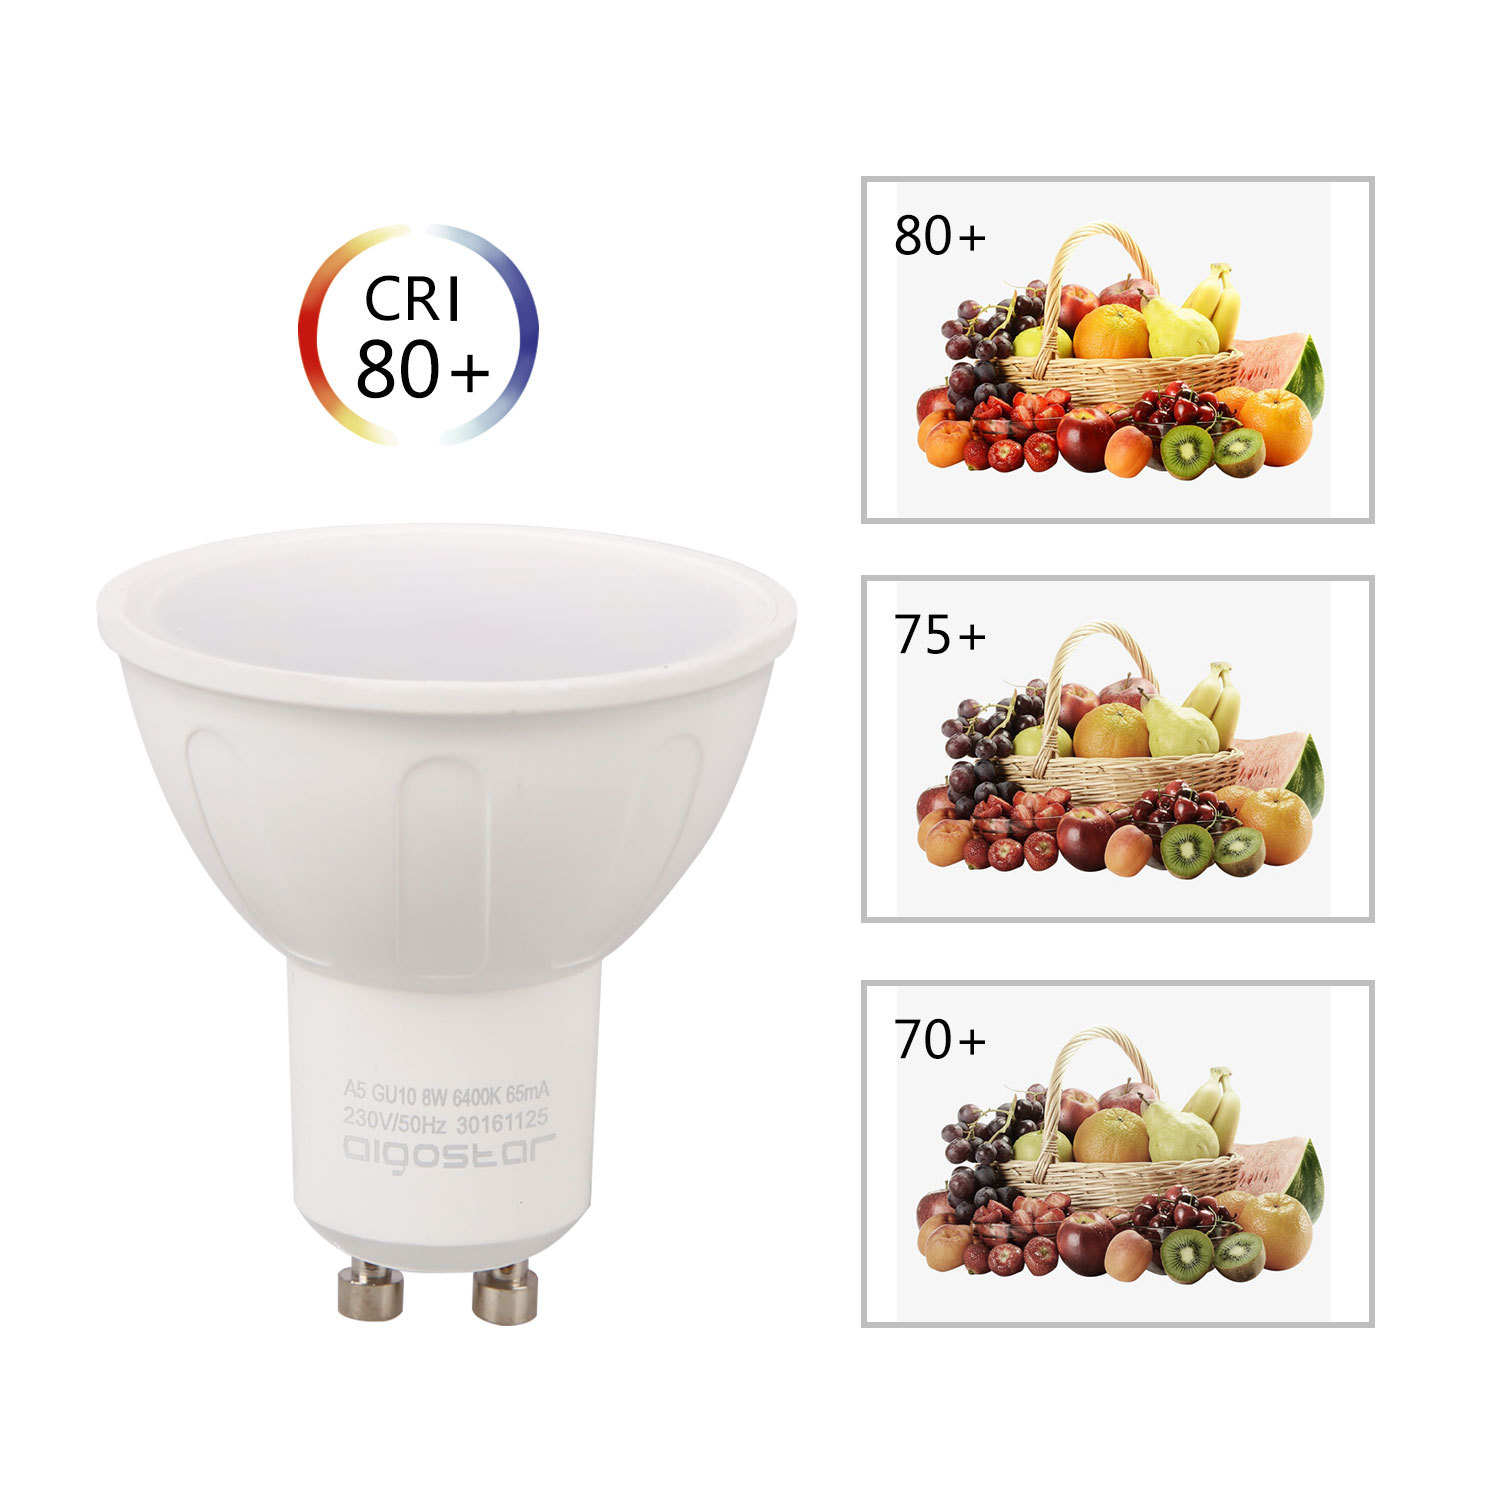 Aigostar -Bombilla LED 8W GU10 ,  Luz blanca fría 6400K, 600lm, 8W Equivalente a 60Watt Lámpara Incandescente,Paquete de 5 Unidades [Clase de eficiencia energética A+]